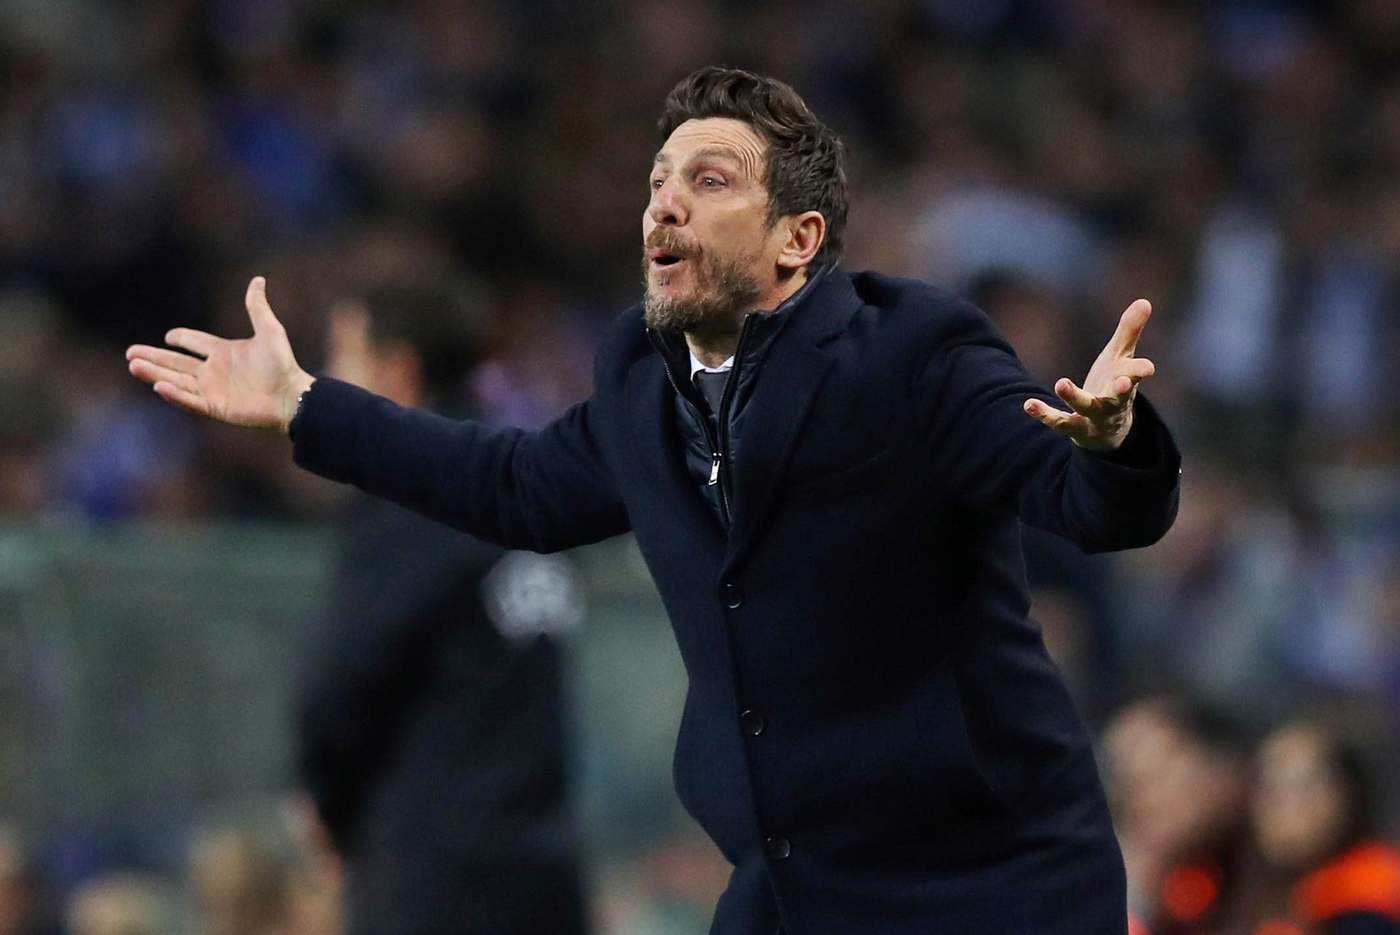 El estratega italiano fue jugador del club y se desempeño como técnico desde 2017,  en donde disputó Champions League, Liga y Copa de Italia.